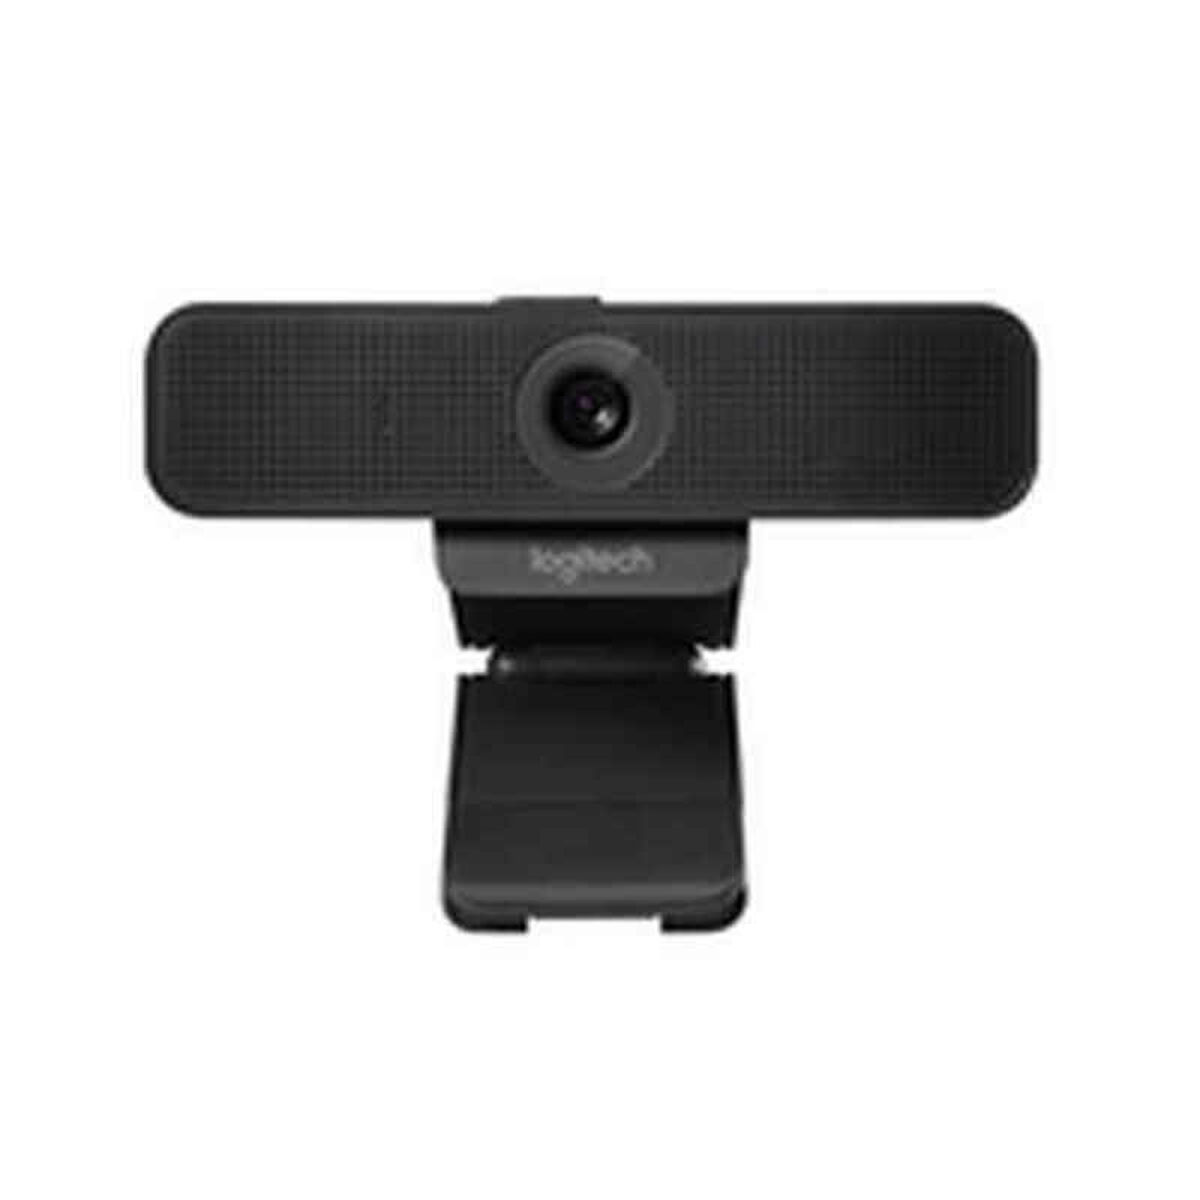 Webcam Logitech C925e HD 1080p